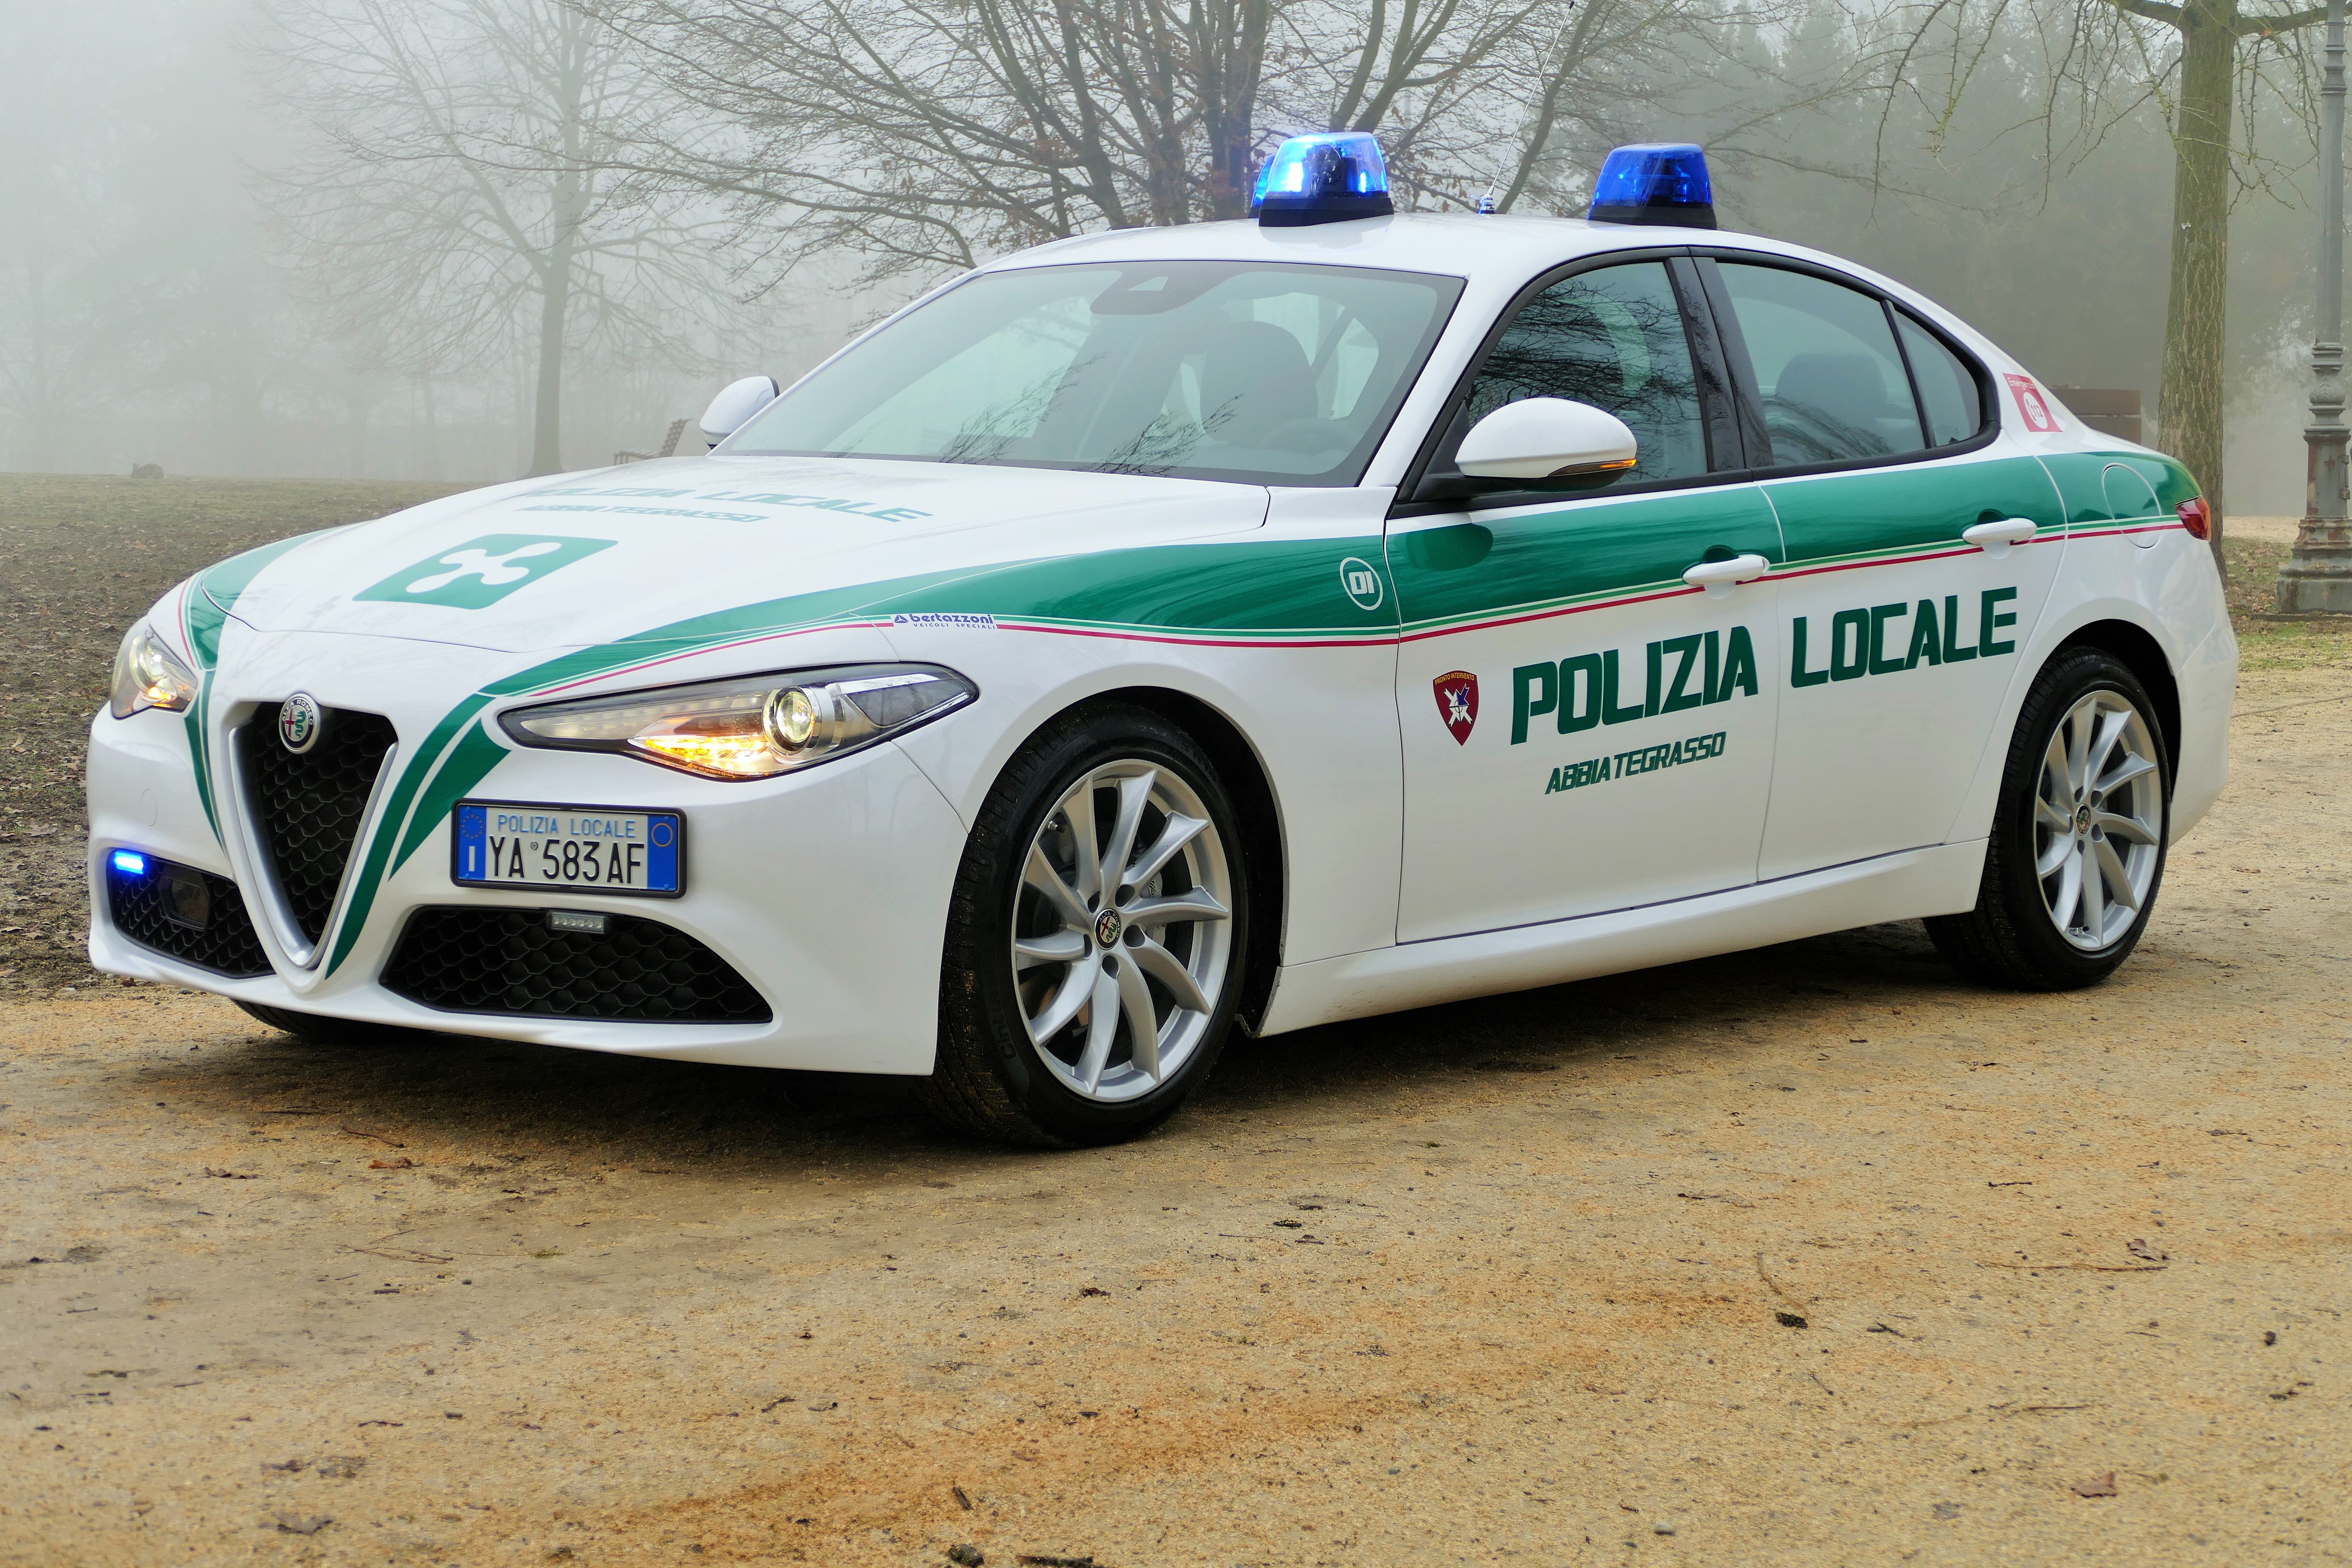 Polizia Locale reparto trasporto organi: Abbiategrasso crea il primo servizio in Italia su Alfa Romeo Giulia | Emergency Live 10